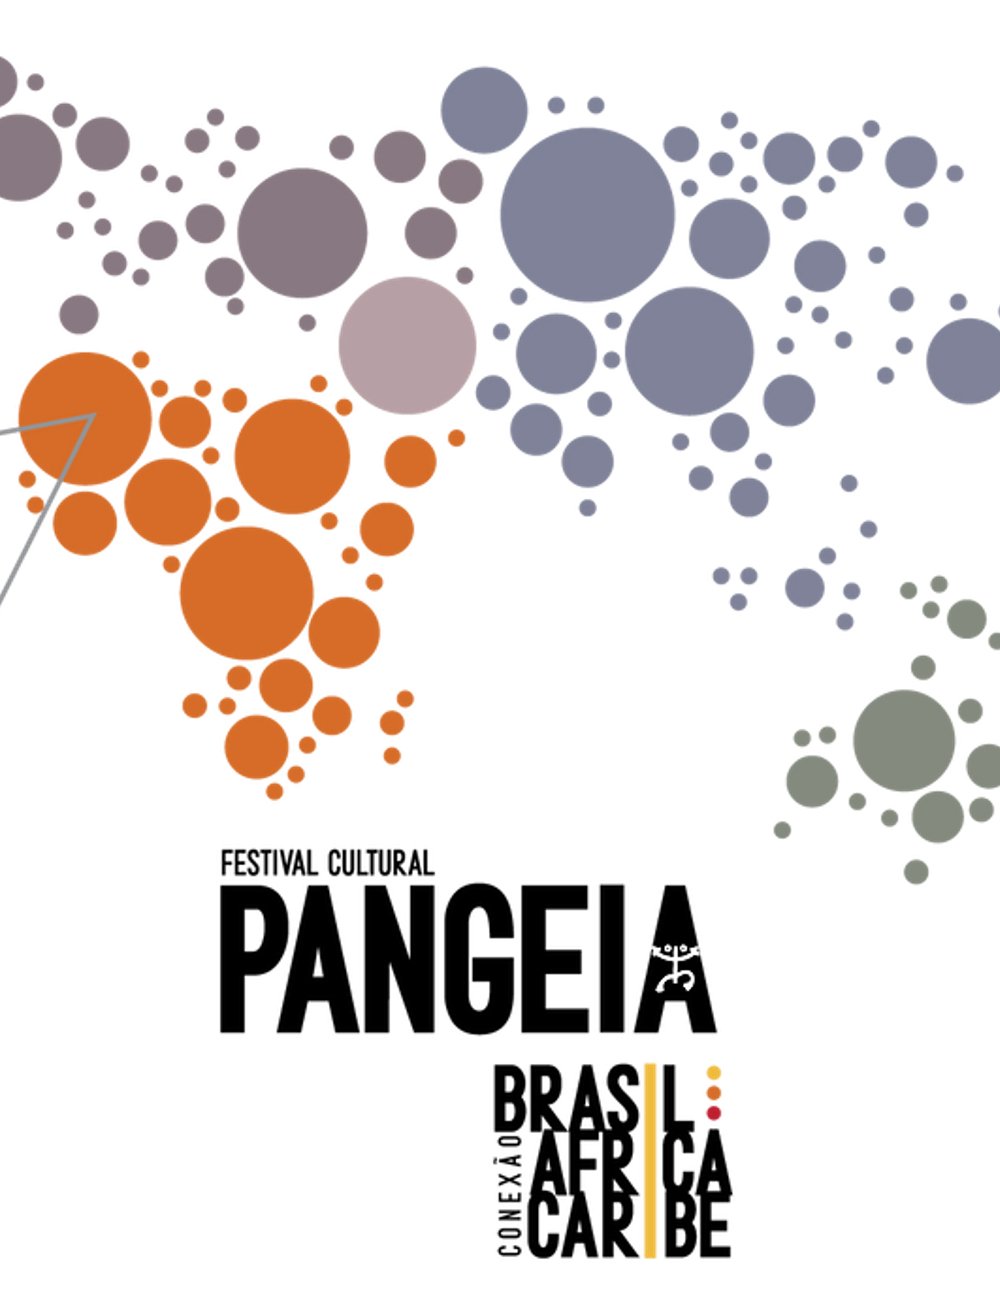 Festival Pangeia - festival - festivais de música - música - São Paulo - https://stealthelook.com.br